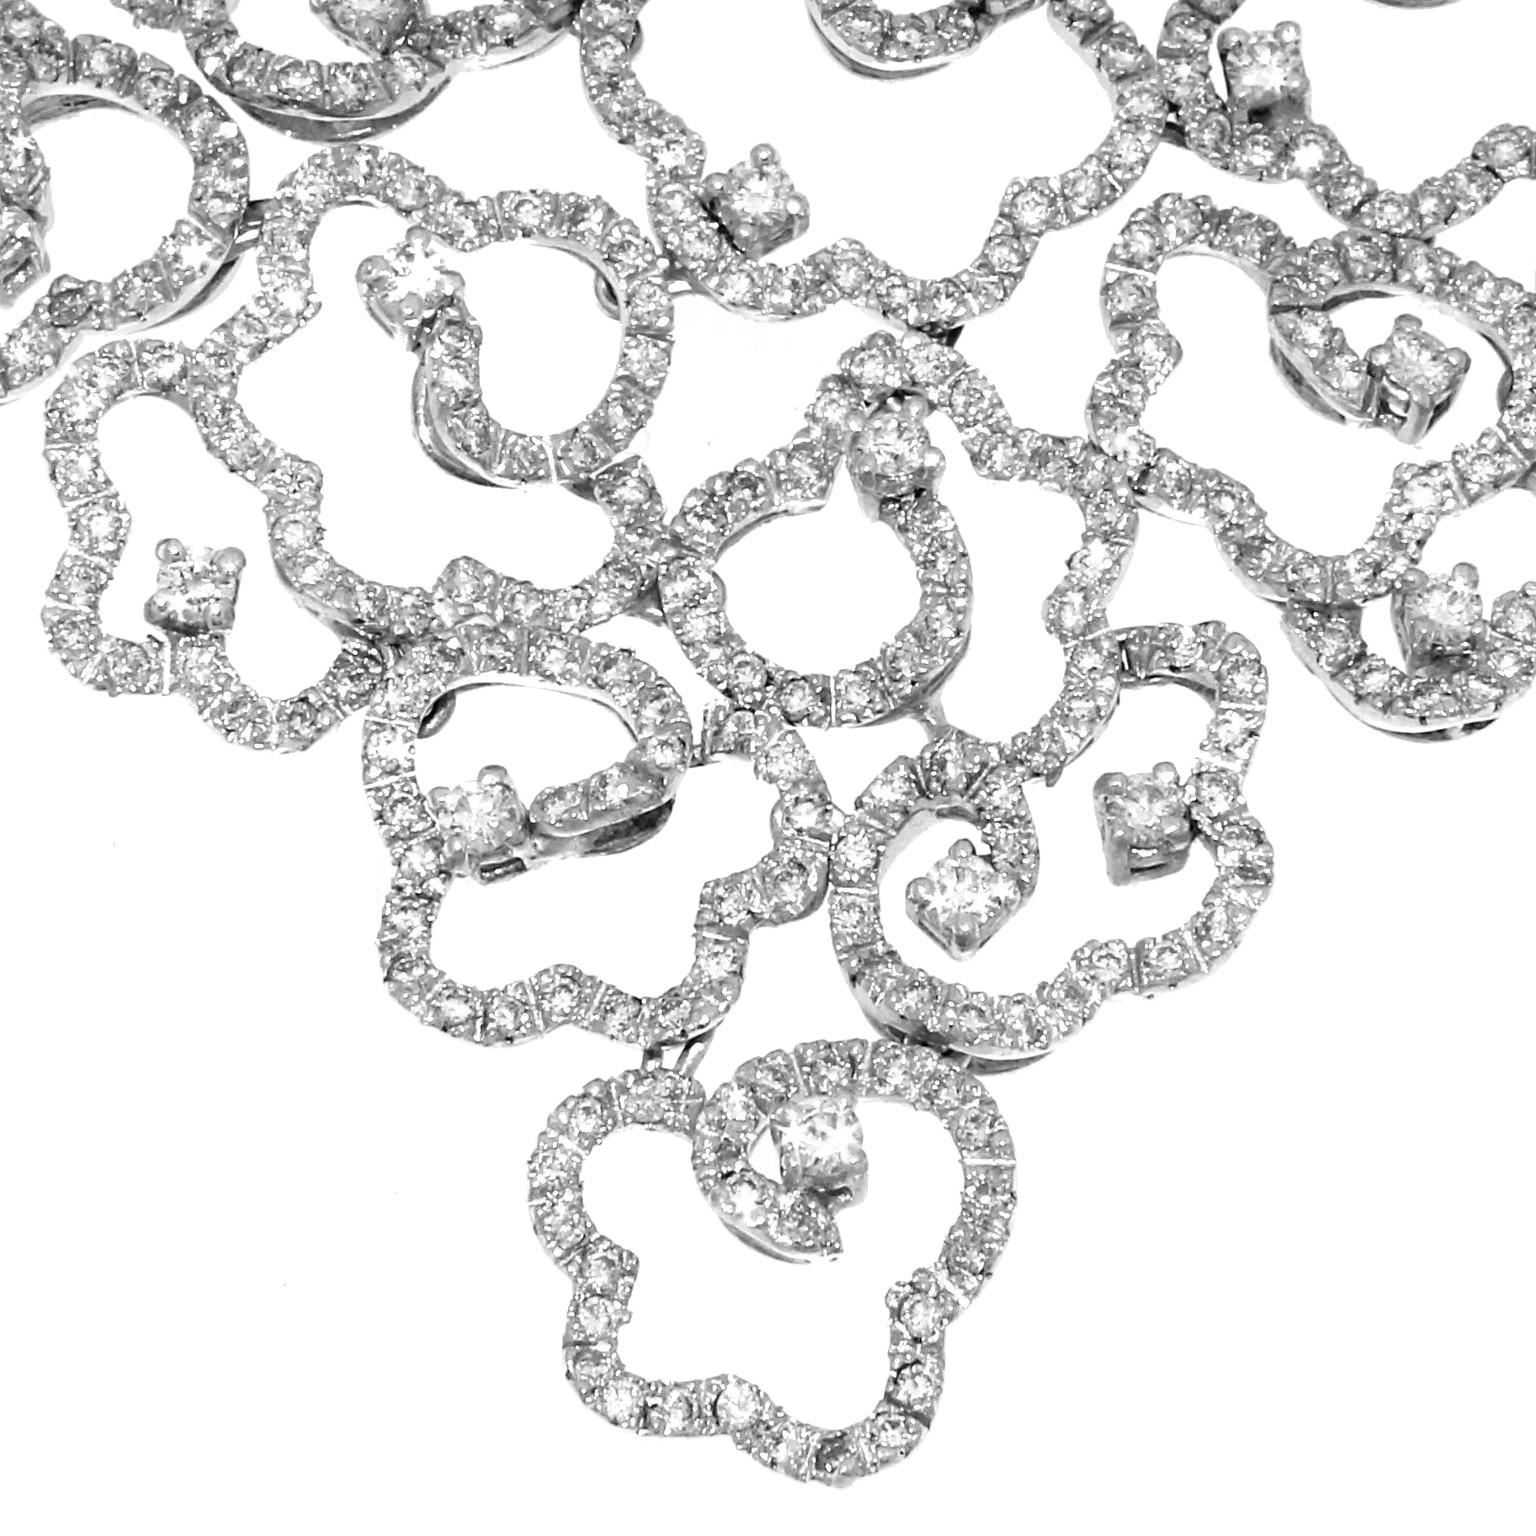 Halskette, Armband und Ohrringe aus der Bandhu-Kollektion aus Weißgold und weißen Diamanten
Diese prächtige Kollektion wurde mit einer Abwechslung von Elementen der floralen Formen geschaffen, um eine Halskette mit ausgewogenen und leichten Formen